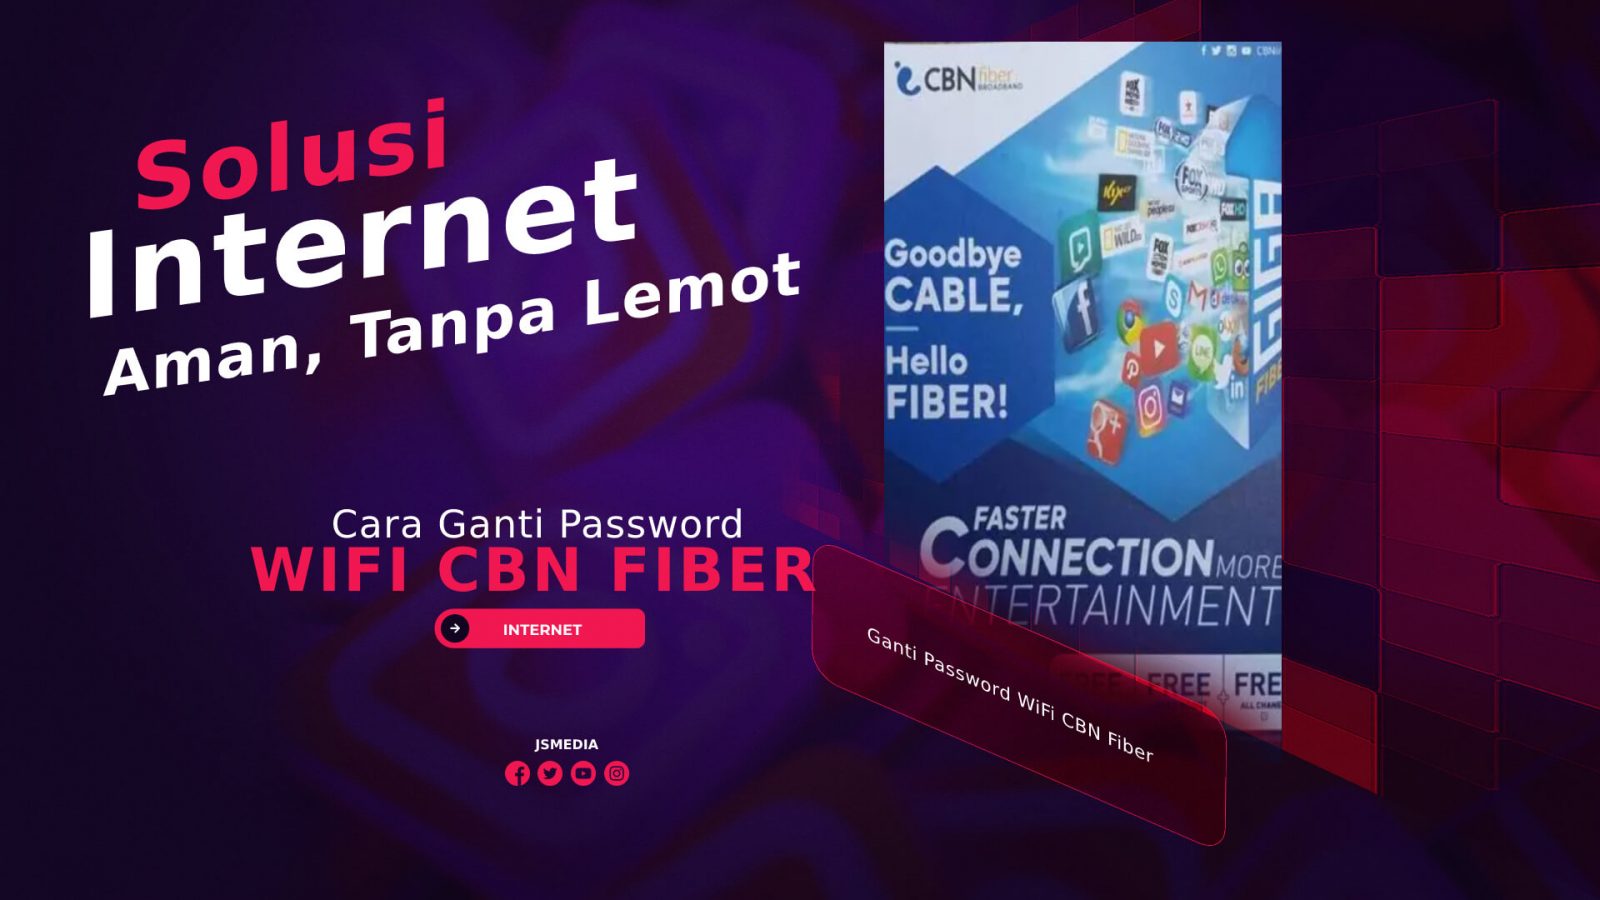 Cara Ganti Password WiFi CBN Fiber, Solusi Internet Aman